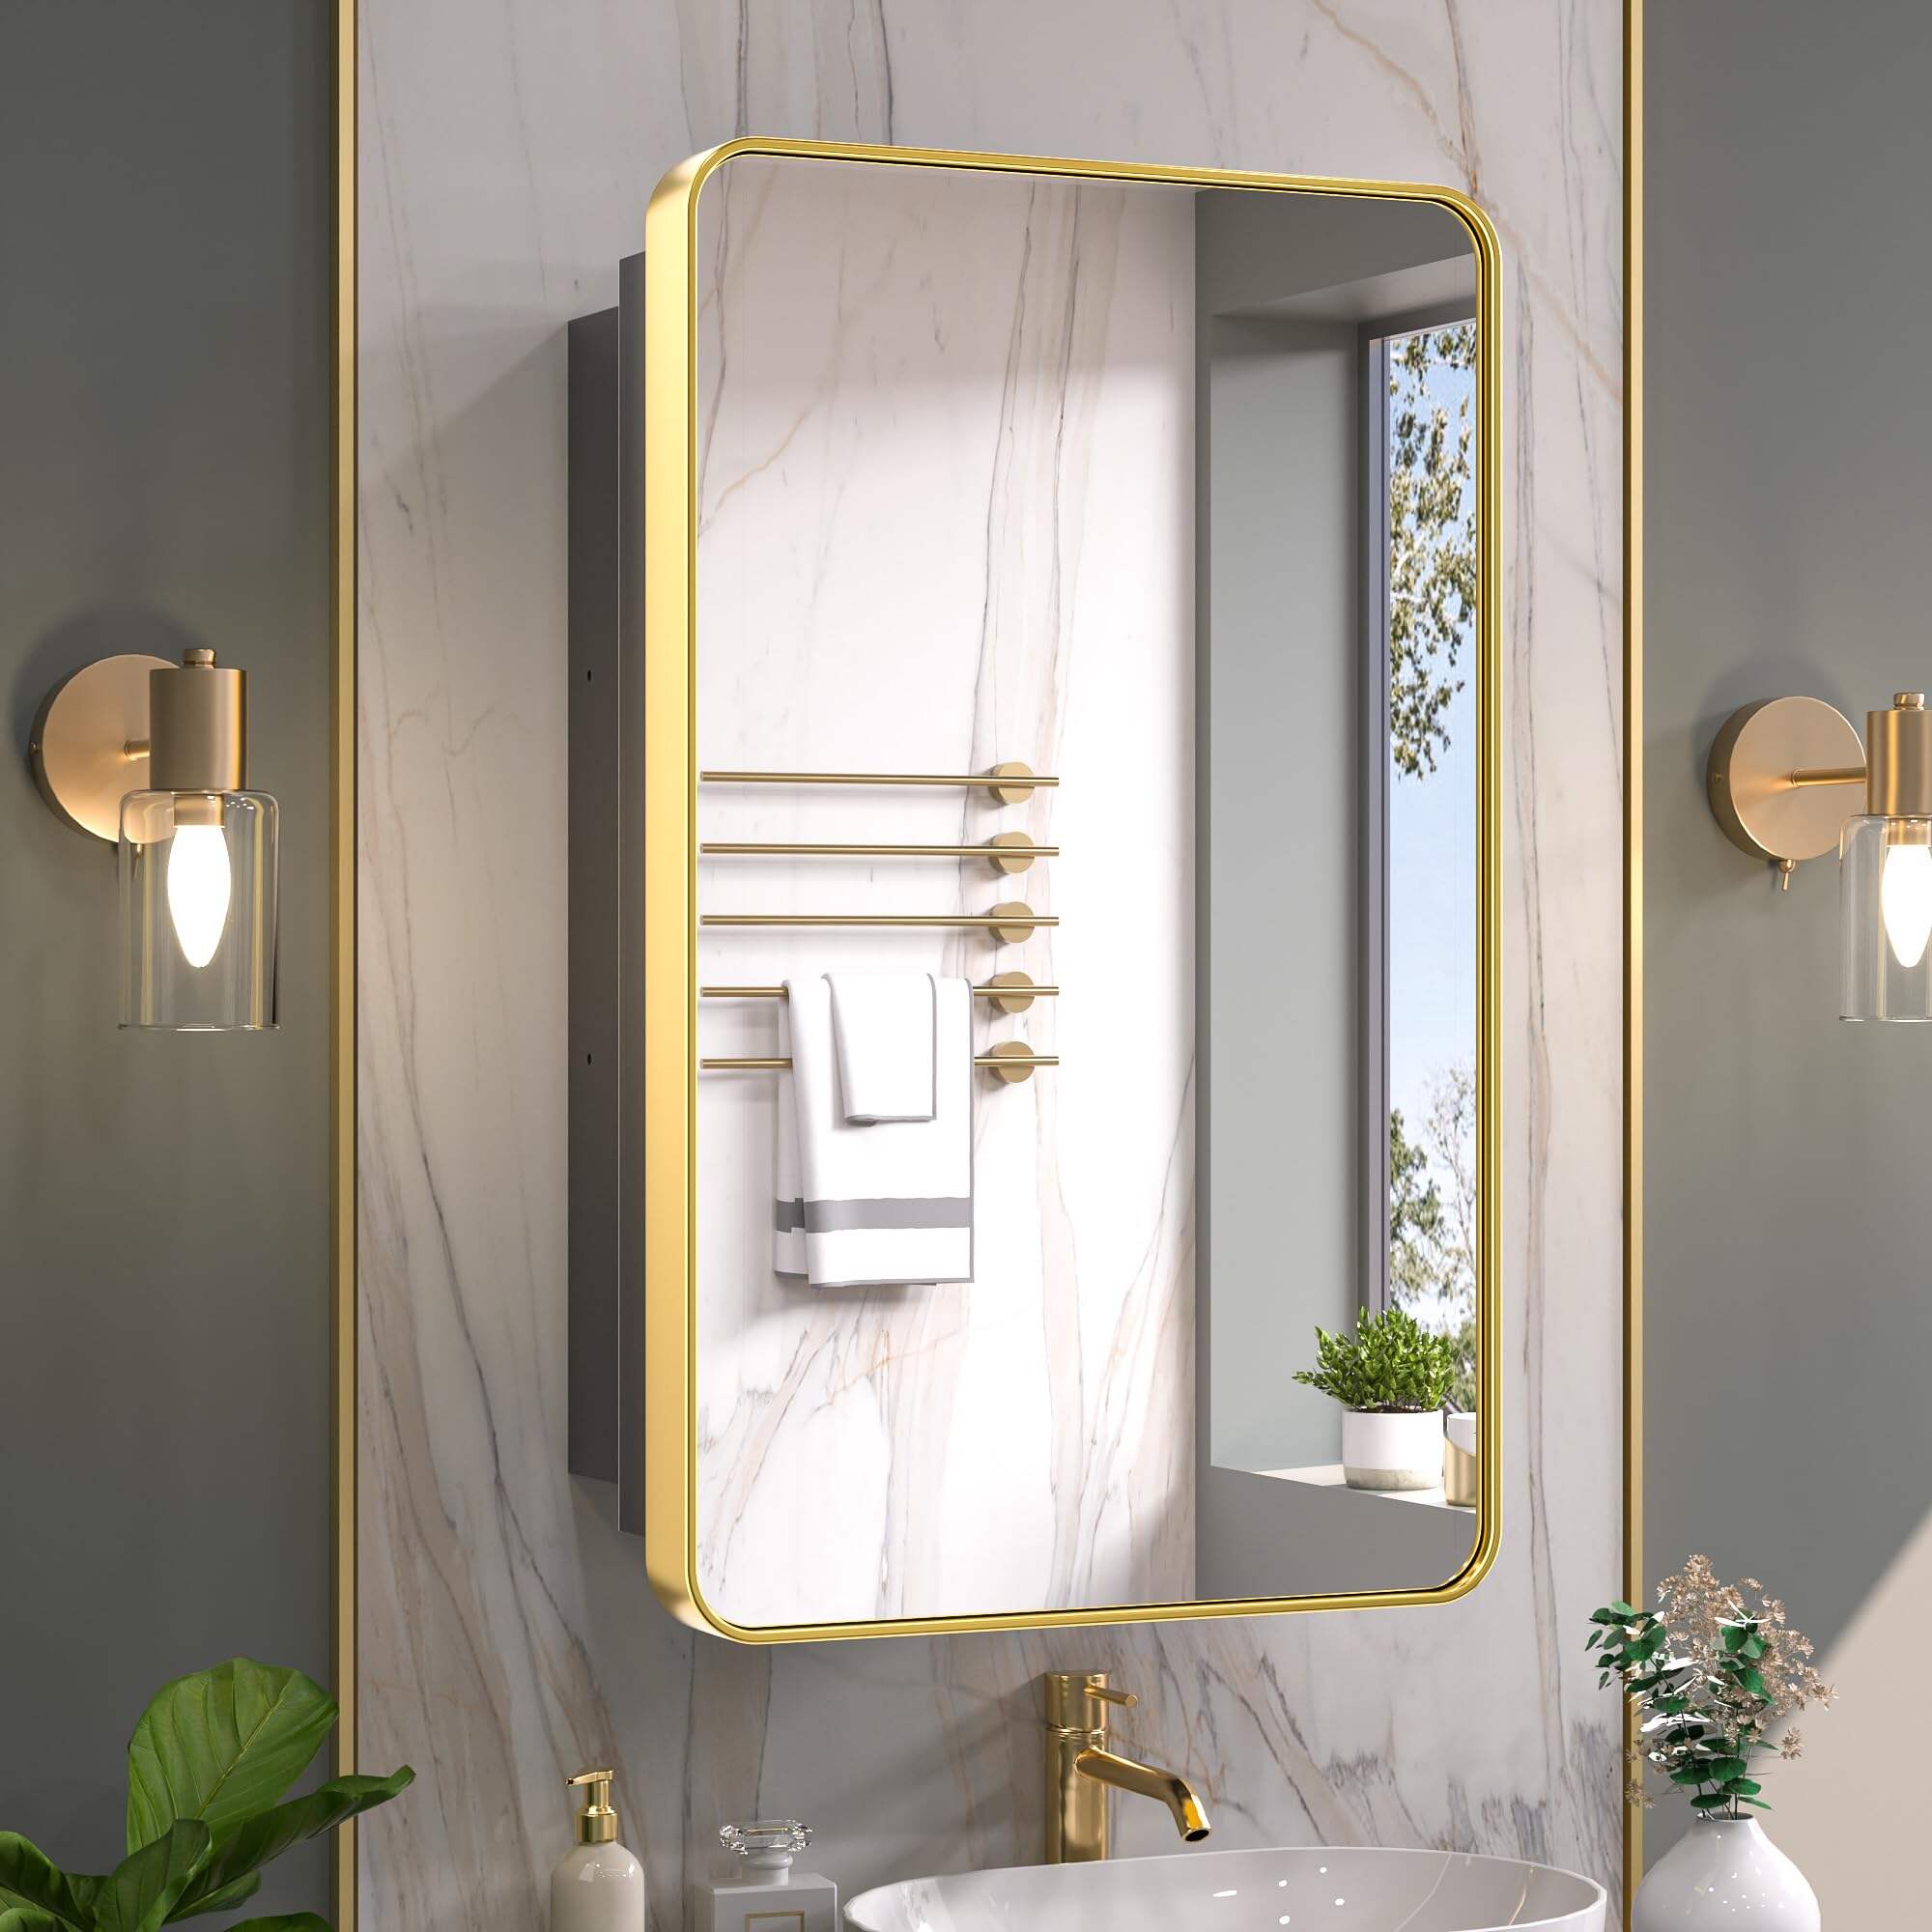 Foshan Haohan Smart Home Co., Ltd. Зеркальные золотые аптечки размером 20 x 32 дюйма для ванной комнаты Регулируемые полки в рамке из нержавеющей стали с одной дверью, закругленный прямоугольник, настенные встраиваемые шкафы для хранения в ванной комнате с зеркалом